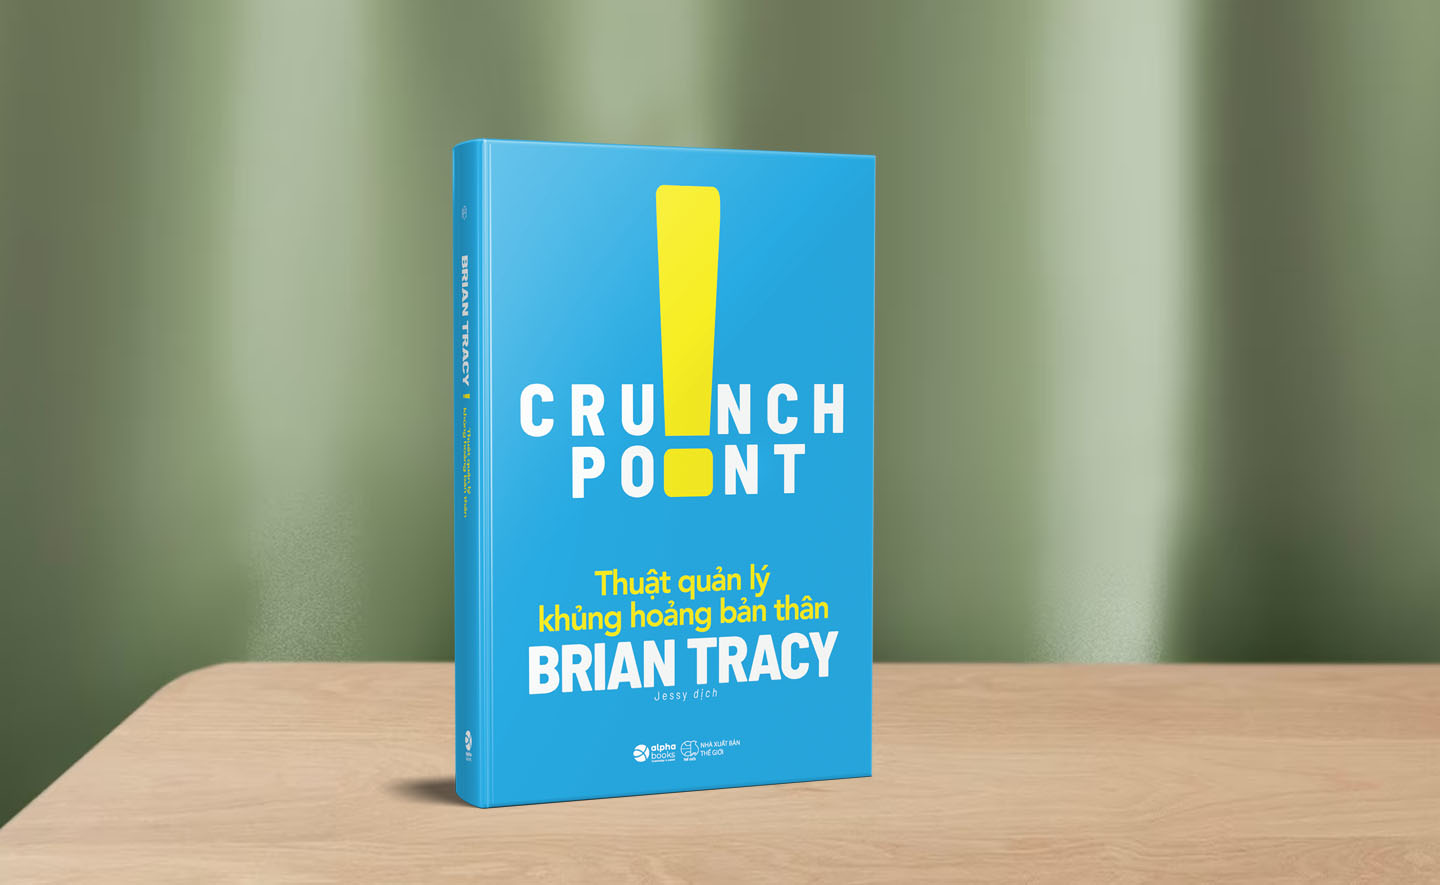 Thuật xử lý khủng hoảng bản thân - Brian Tracy